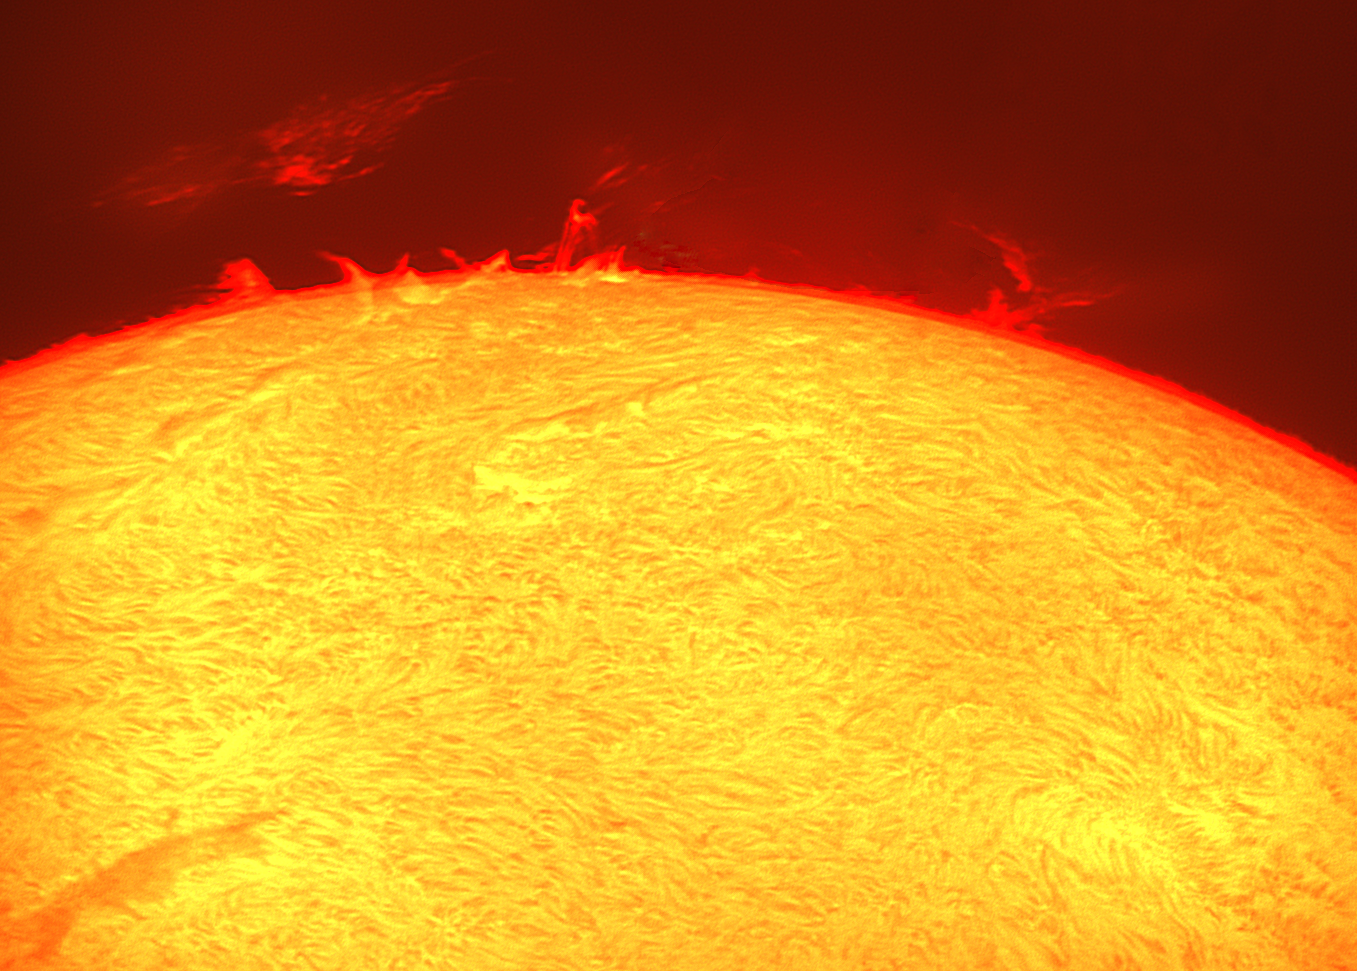 Schwebende Protuberanz am 14. März 2014 - eine Übersicht über eine größere Sonnenregion